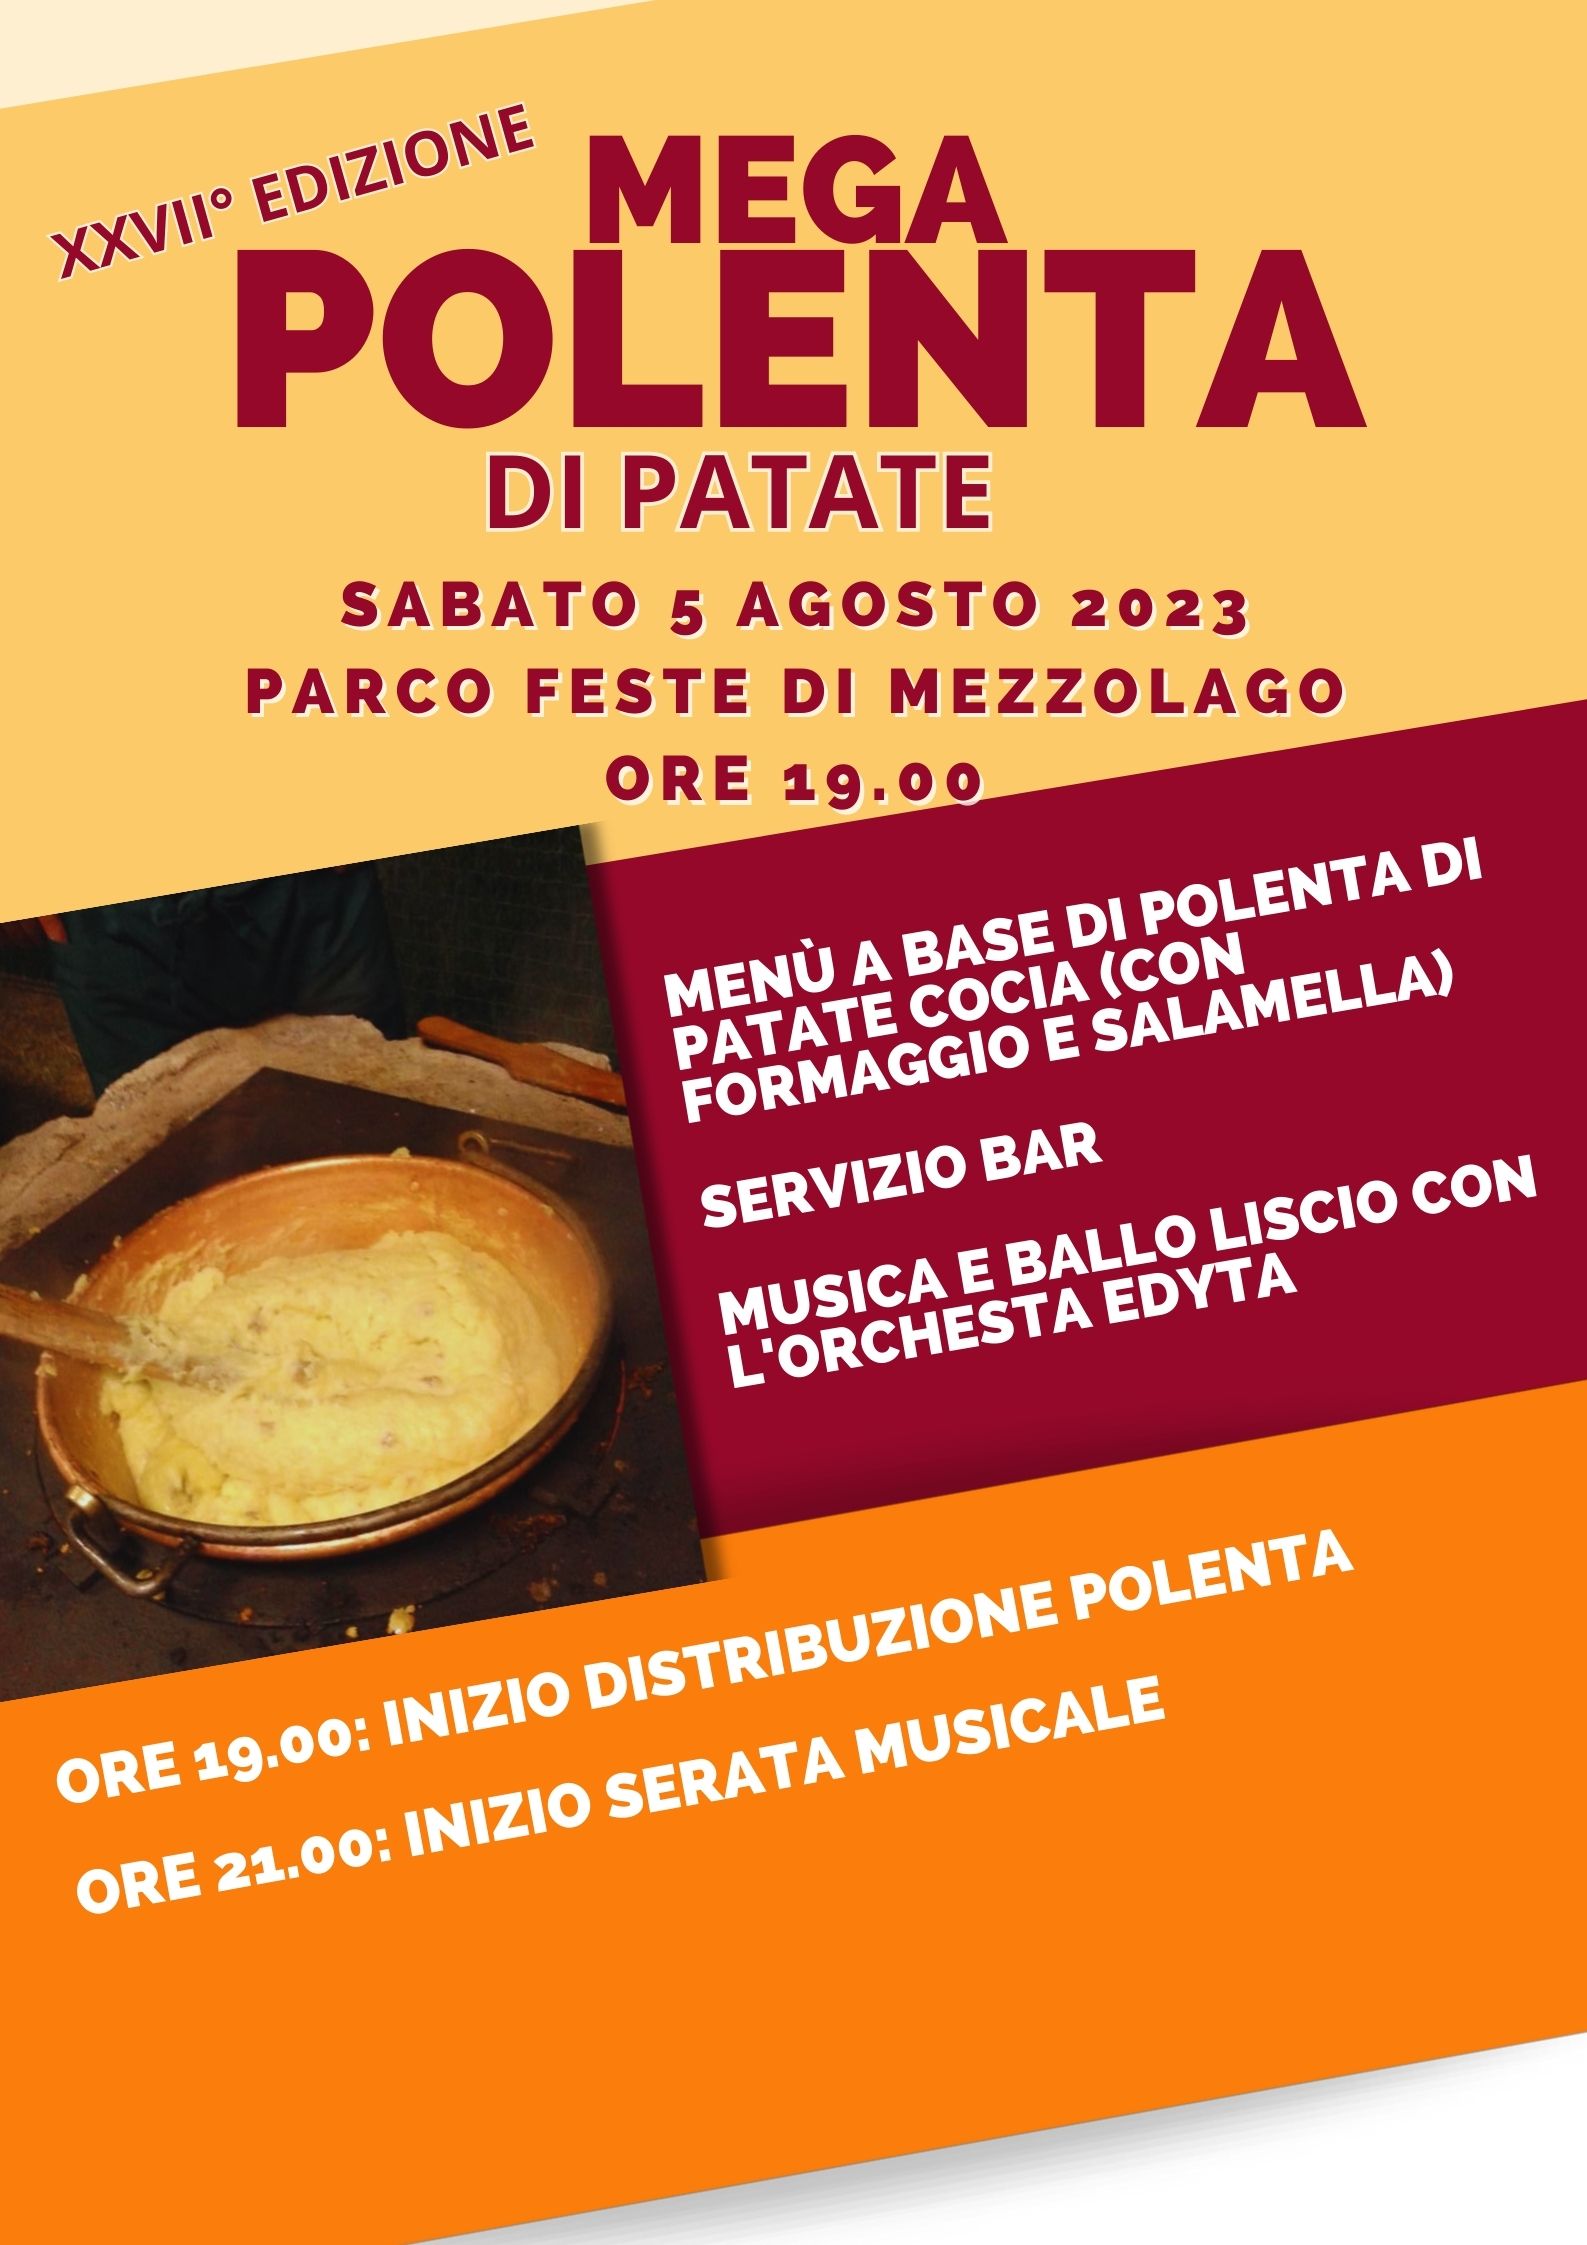 Poster pubblicitario dell'evento "Megapolenta di Patate" del 2023, che si terrà sabato 5 agosto alle 19. Il menù è polenta di patate "cocia" con formaggio e salamella, e musica liscia come accompagnamento musicale. 